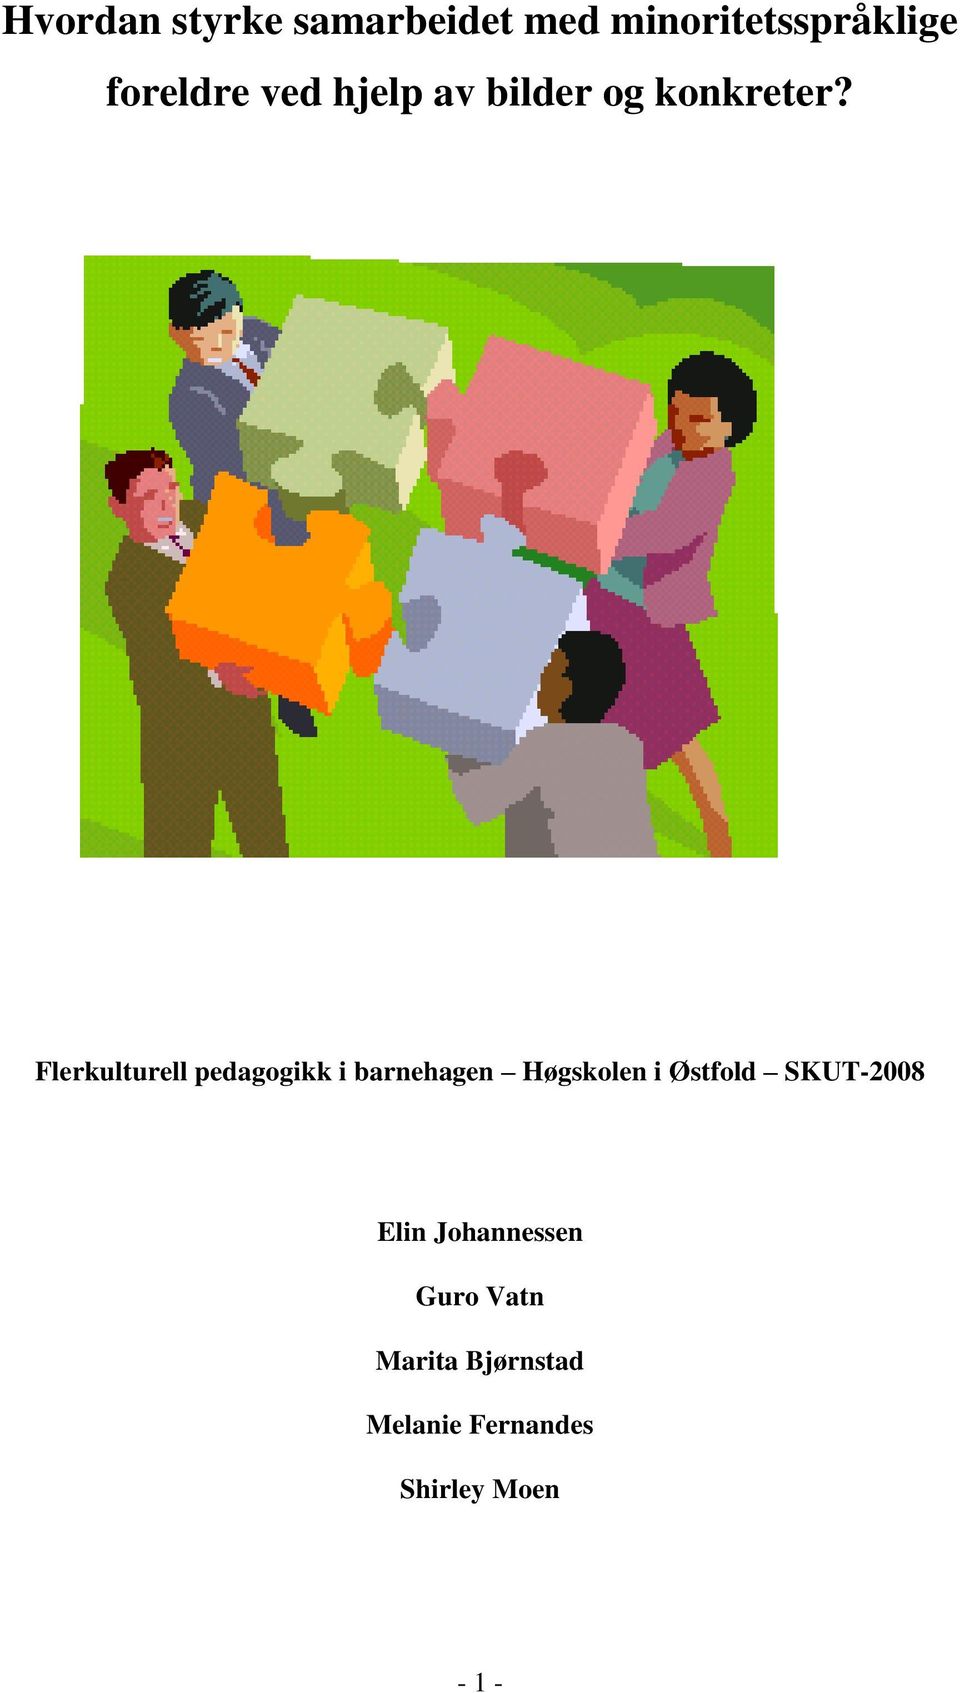 Flerkulturell pedagogikk i barnehagen Høgskolen i Østfold